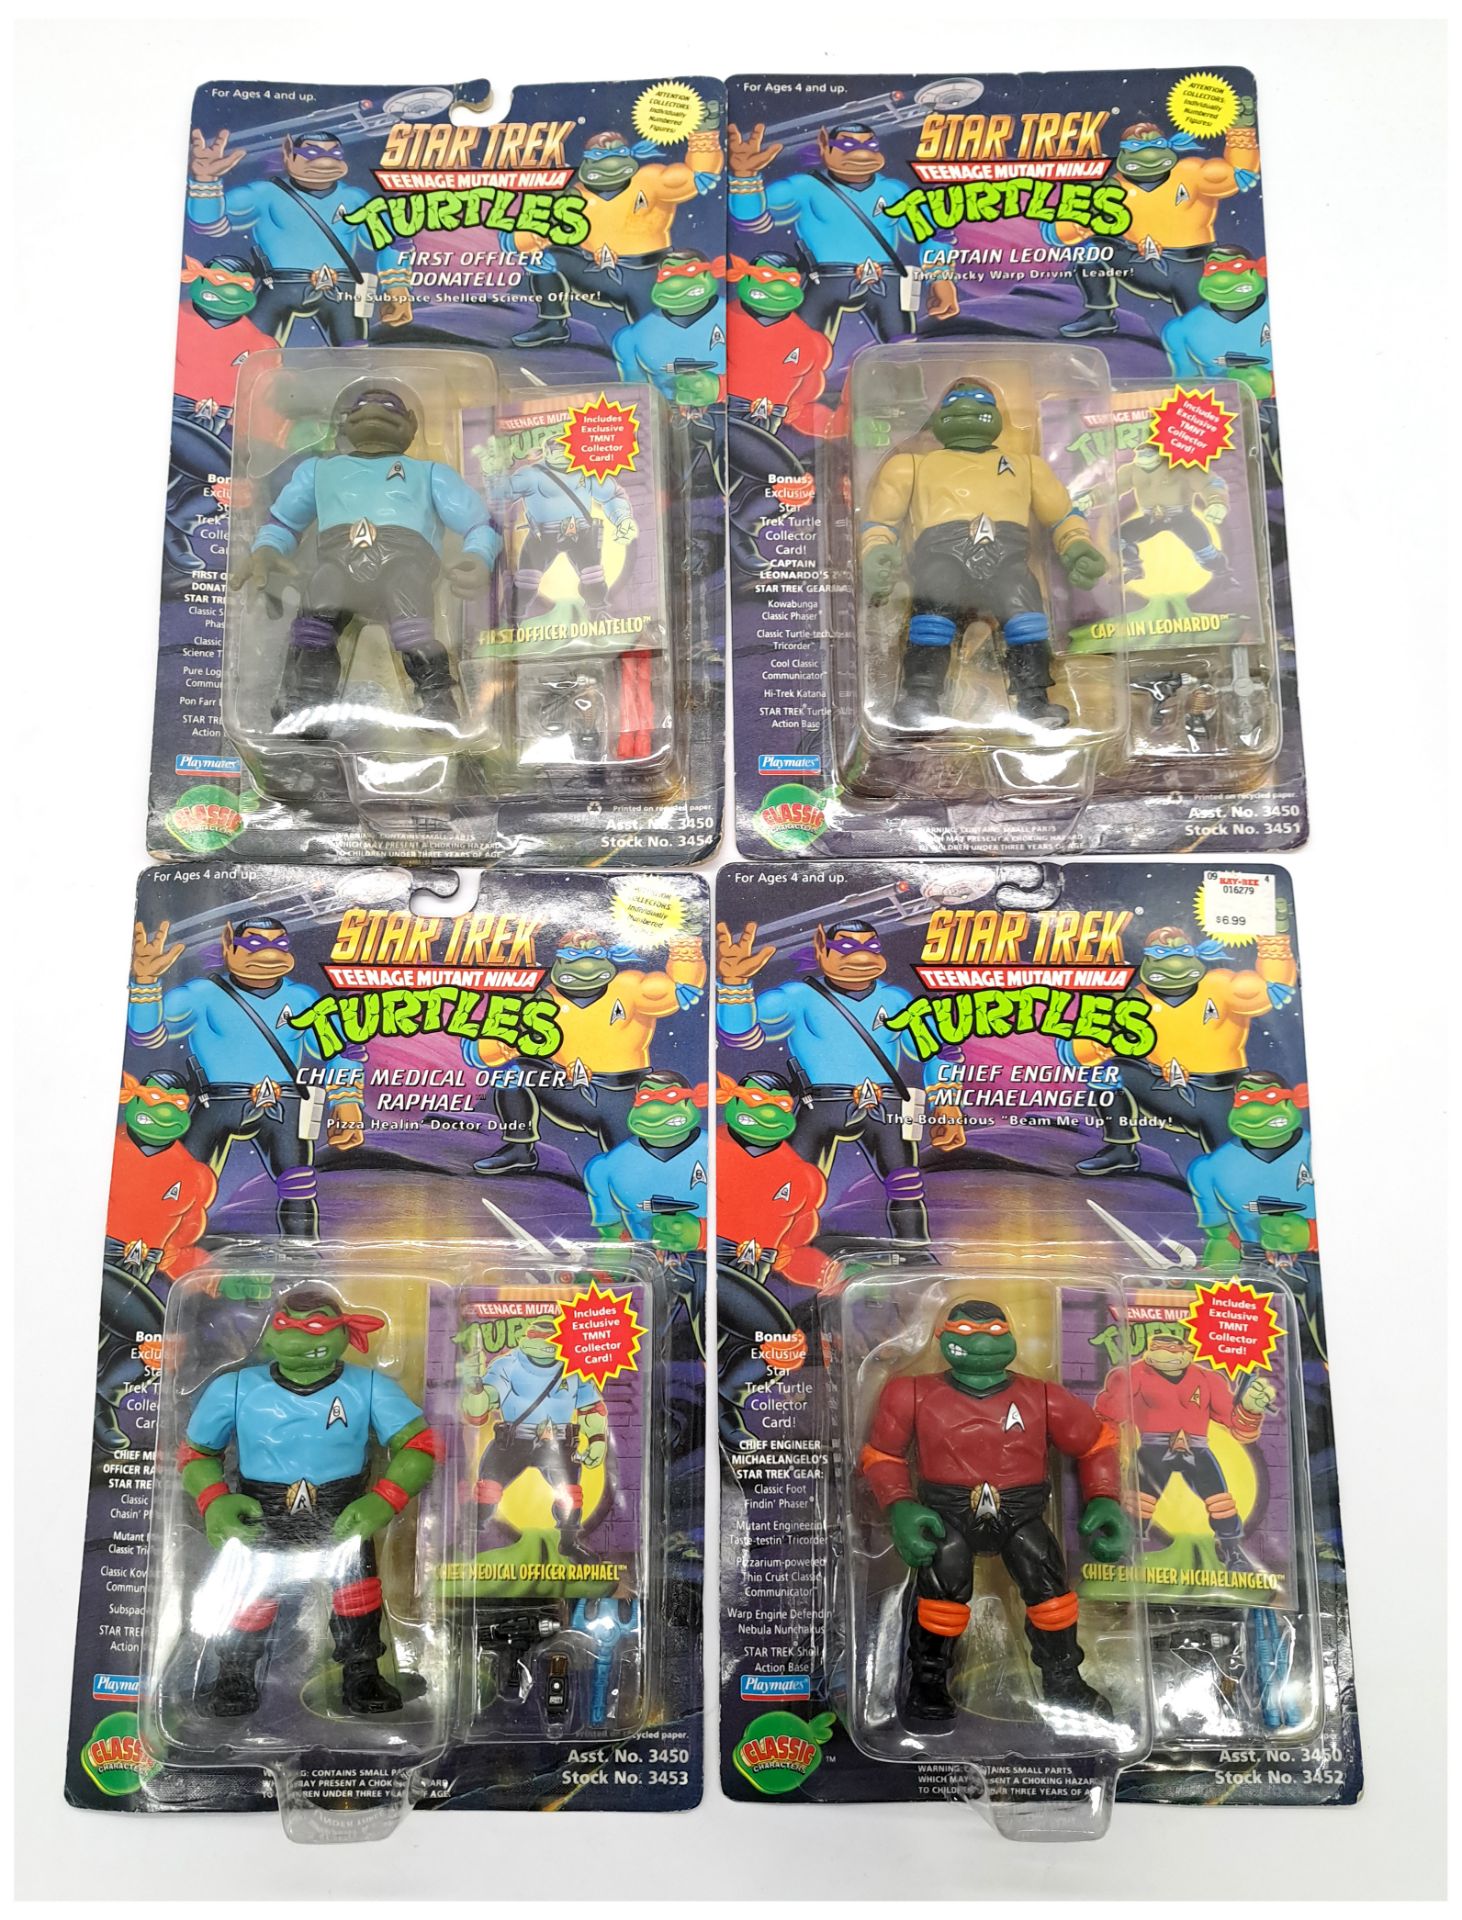 Playmates Star Trek Teenage Mutant Ninja Turtles Carded Figures